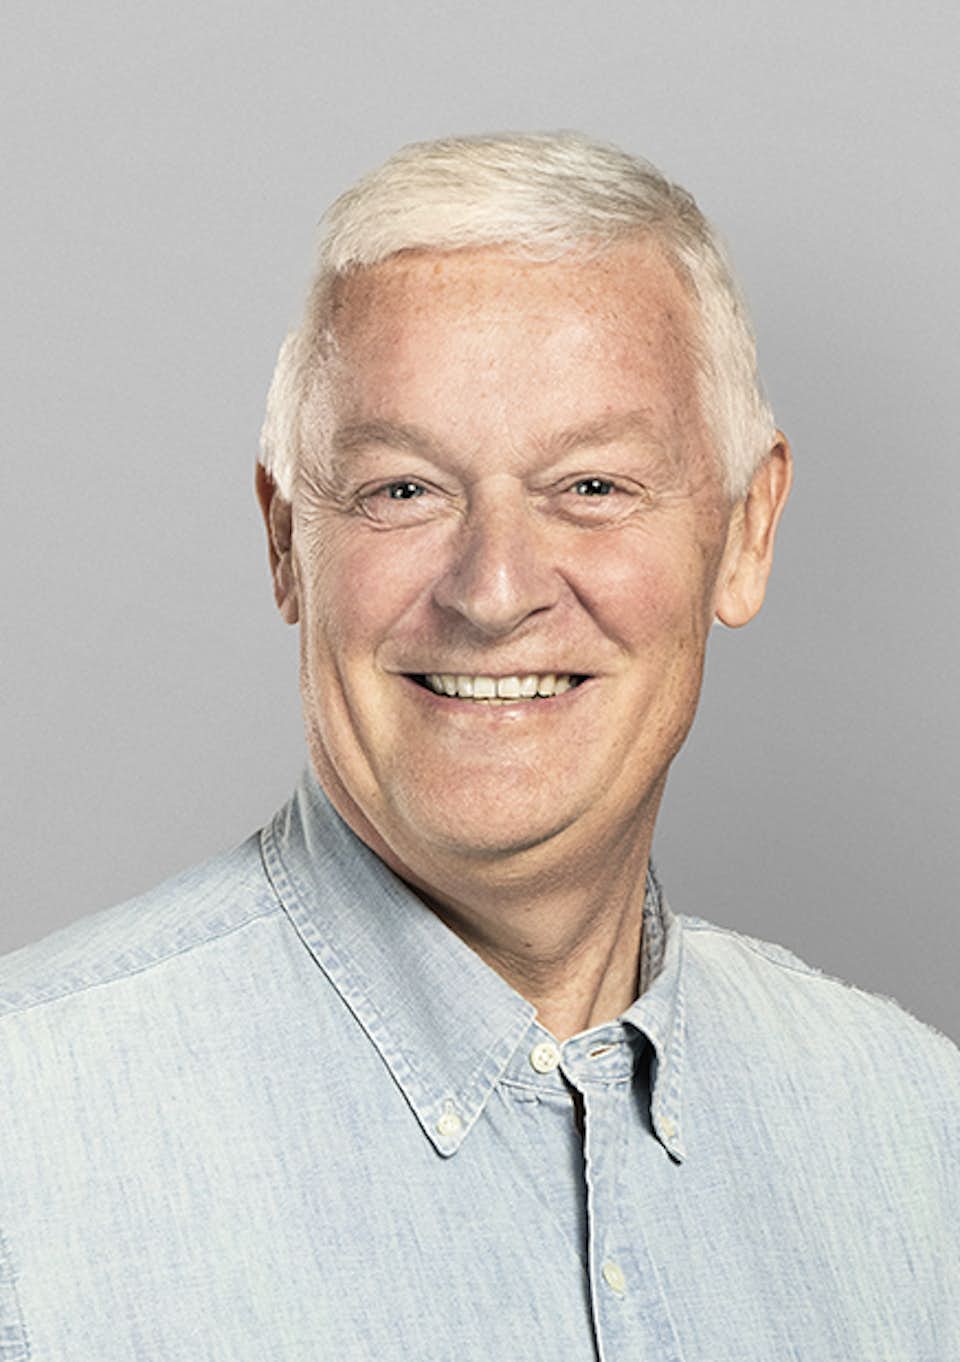 Søren Christian Mikkelsen SCM